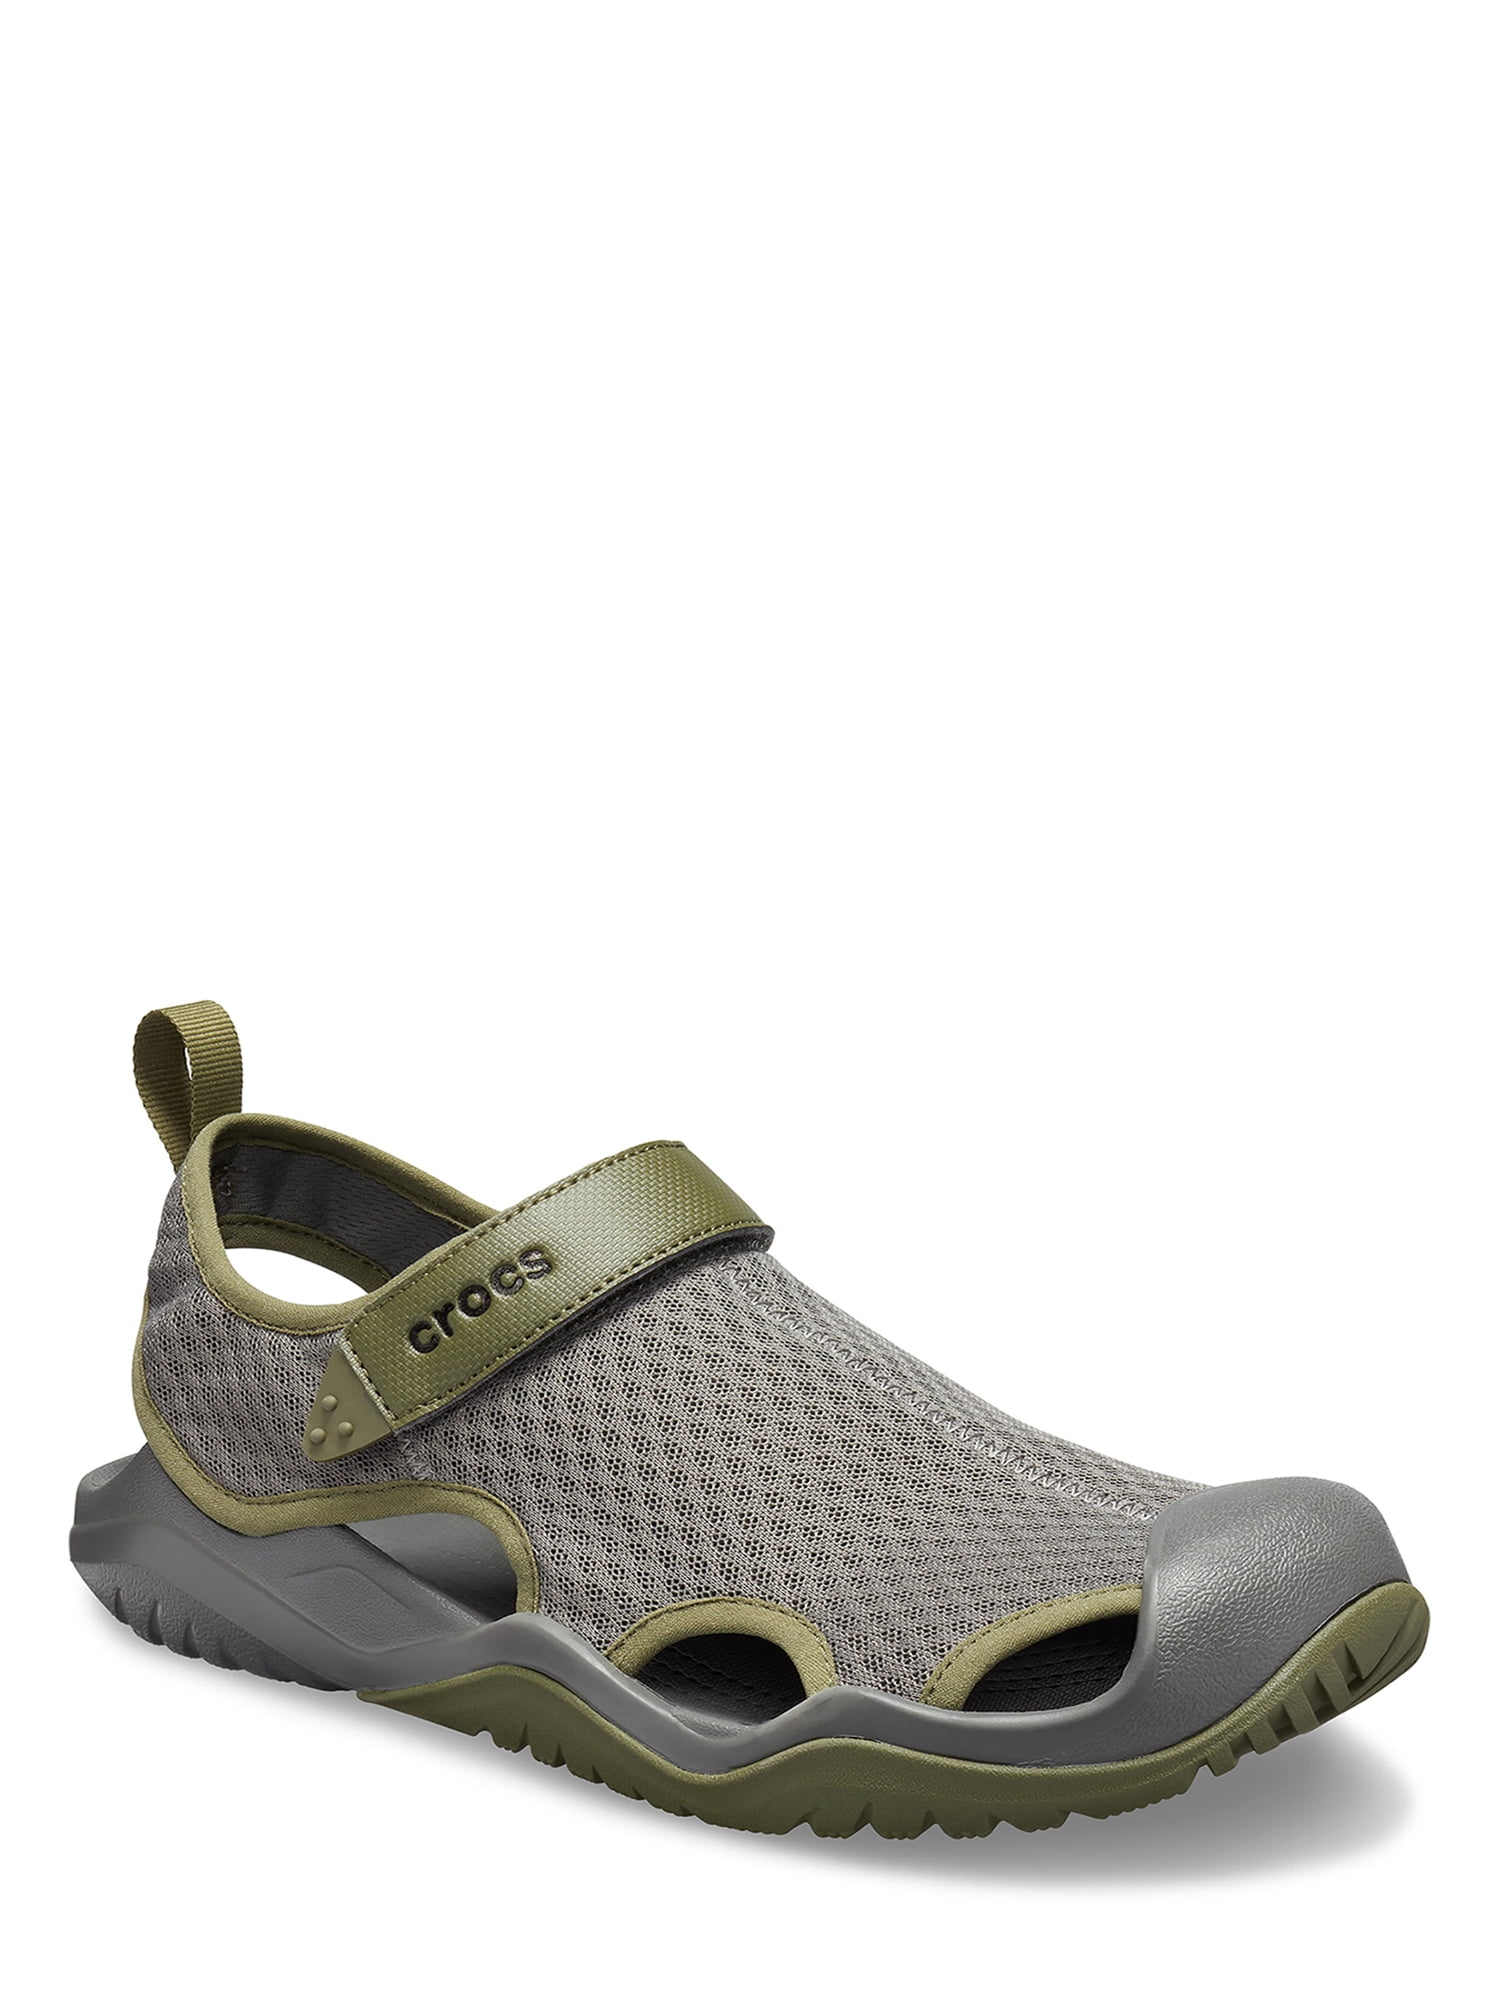 crocs men's swiftwater mesh deck sandals